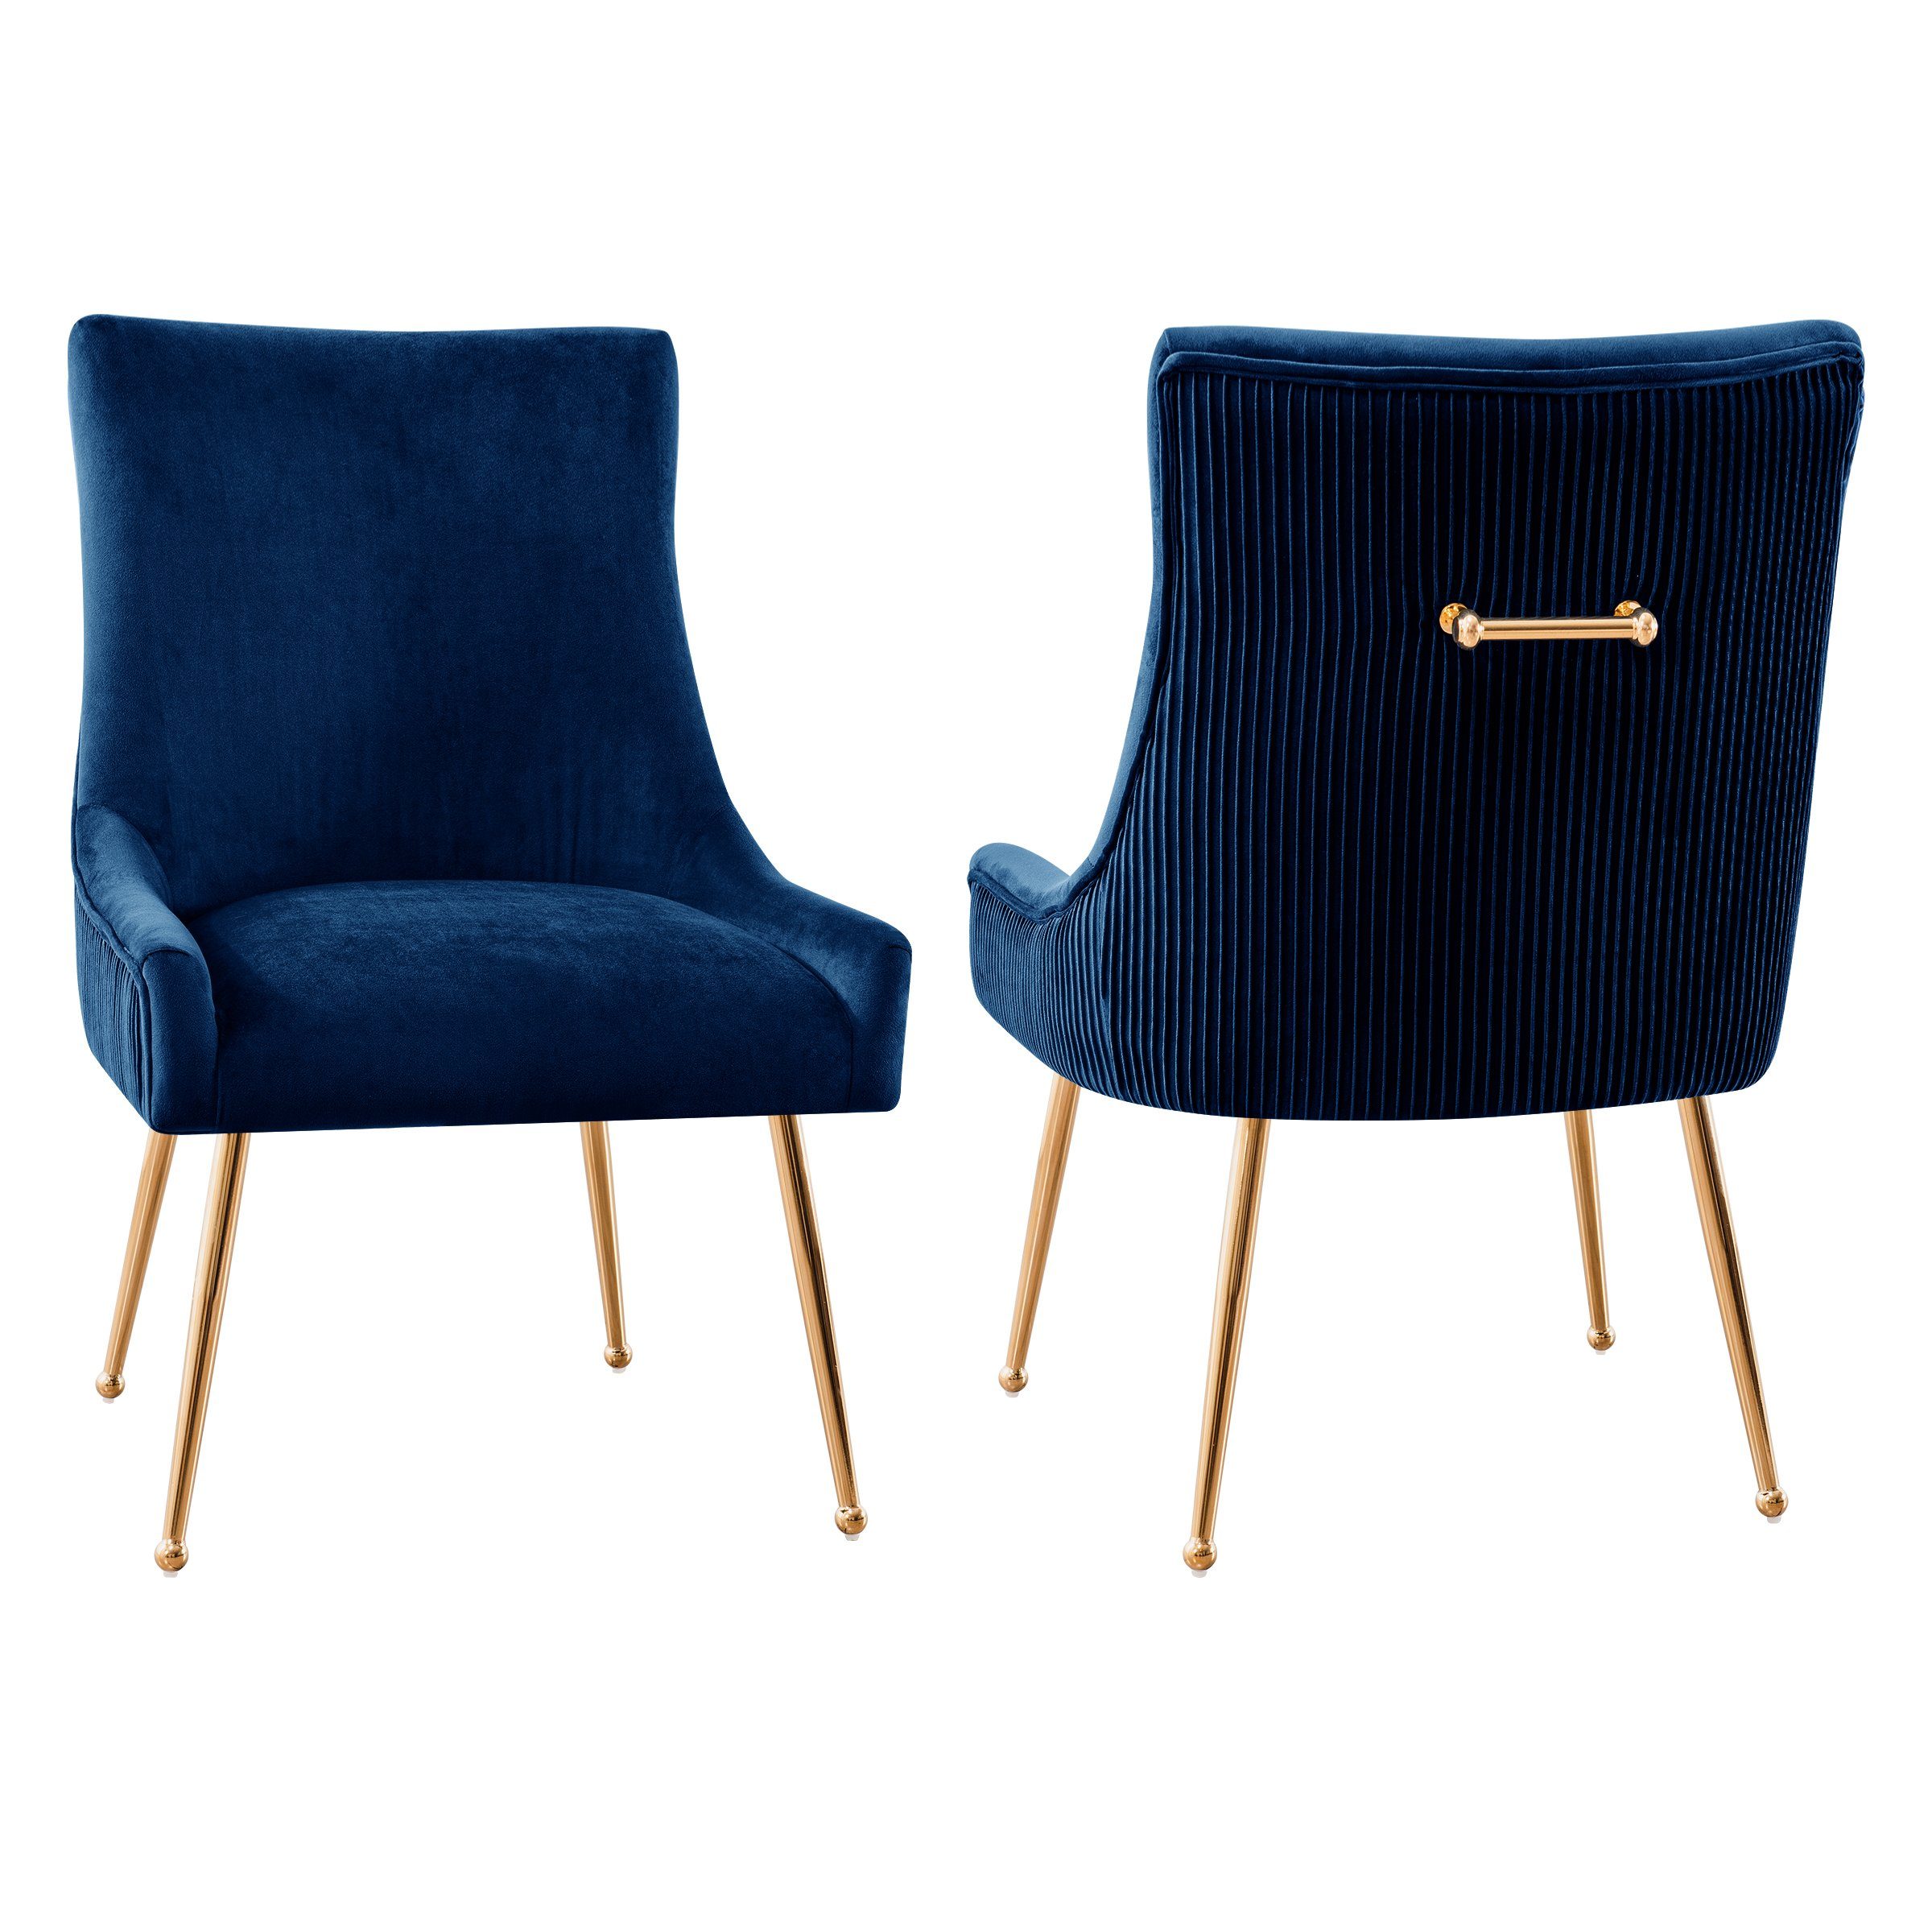 SUBRTEX Esszimmerstuhl Sessel mit Rückenlehne, 2er Set, Schwammpolster, Ständer aus Metall Marineblau | Stühle